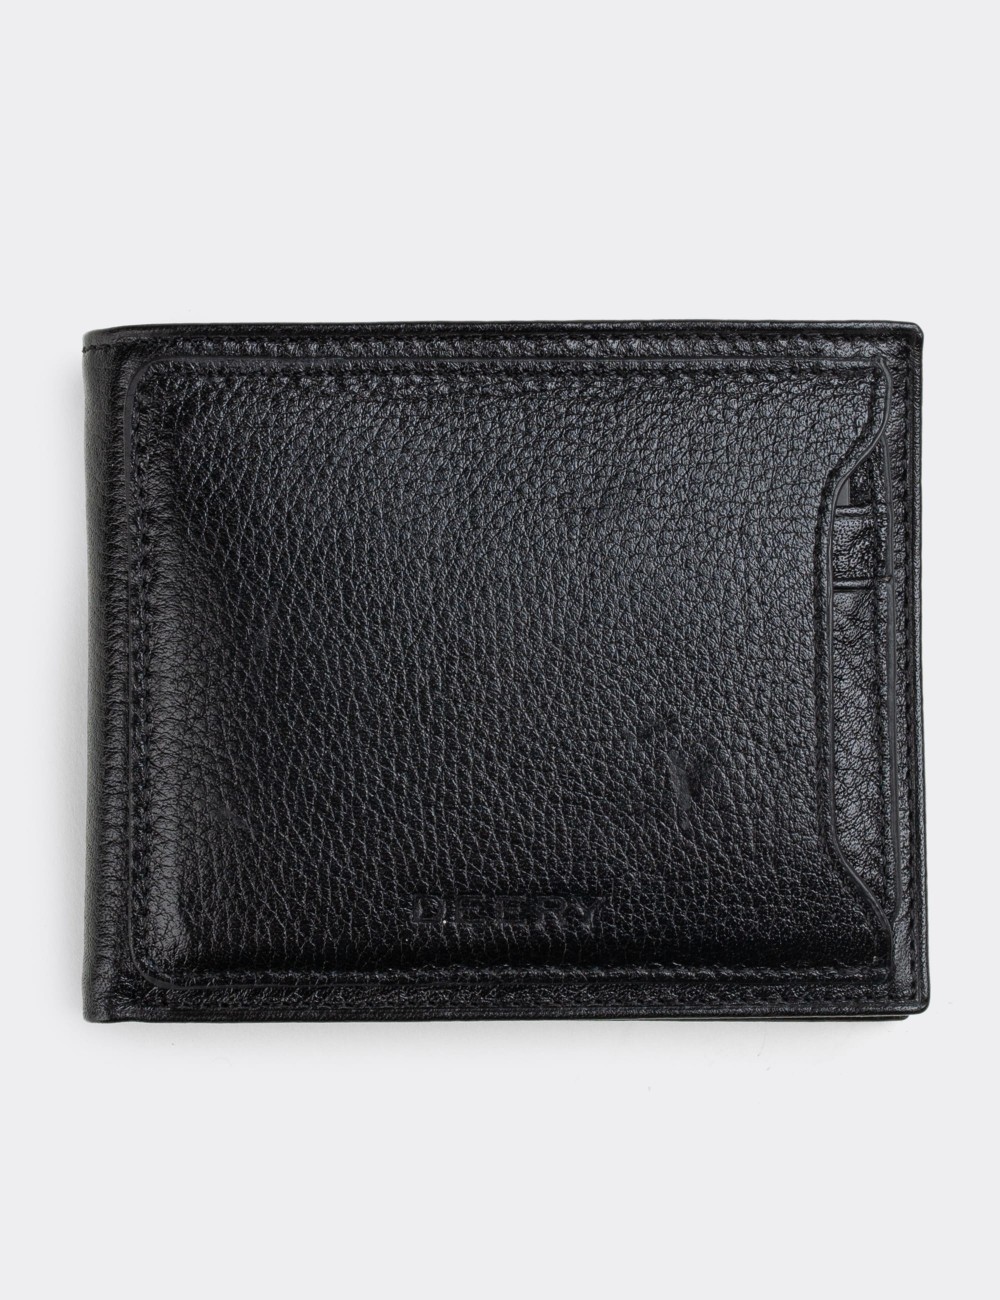  Leather Black Men's Wallet - 00320MSYHZ01